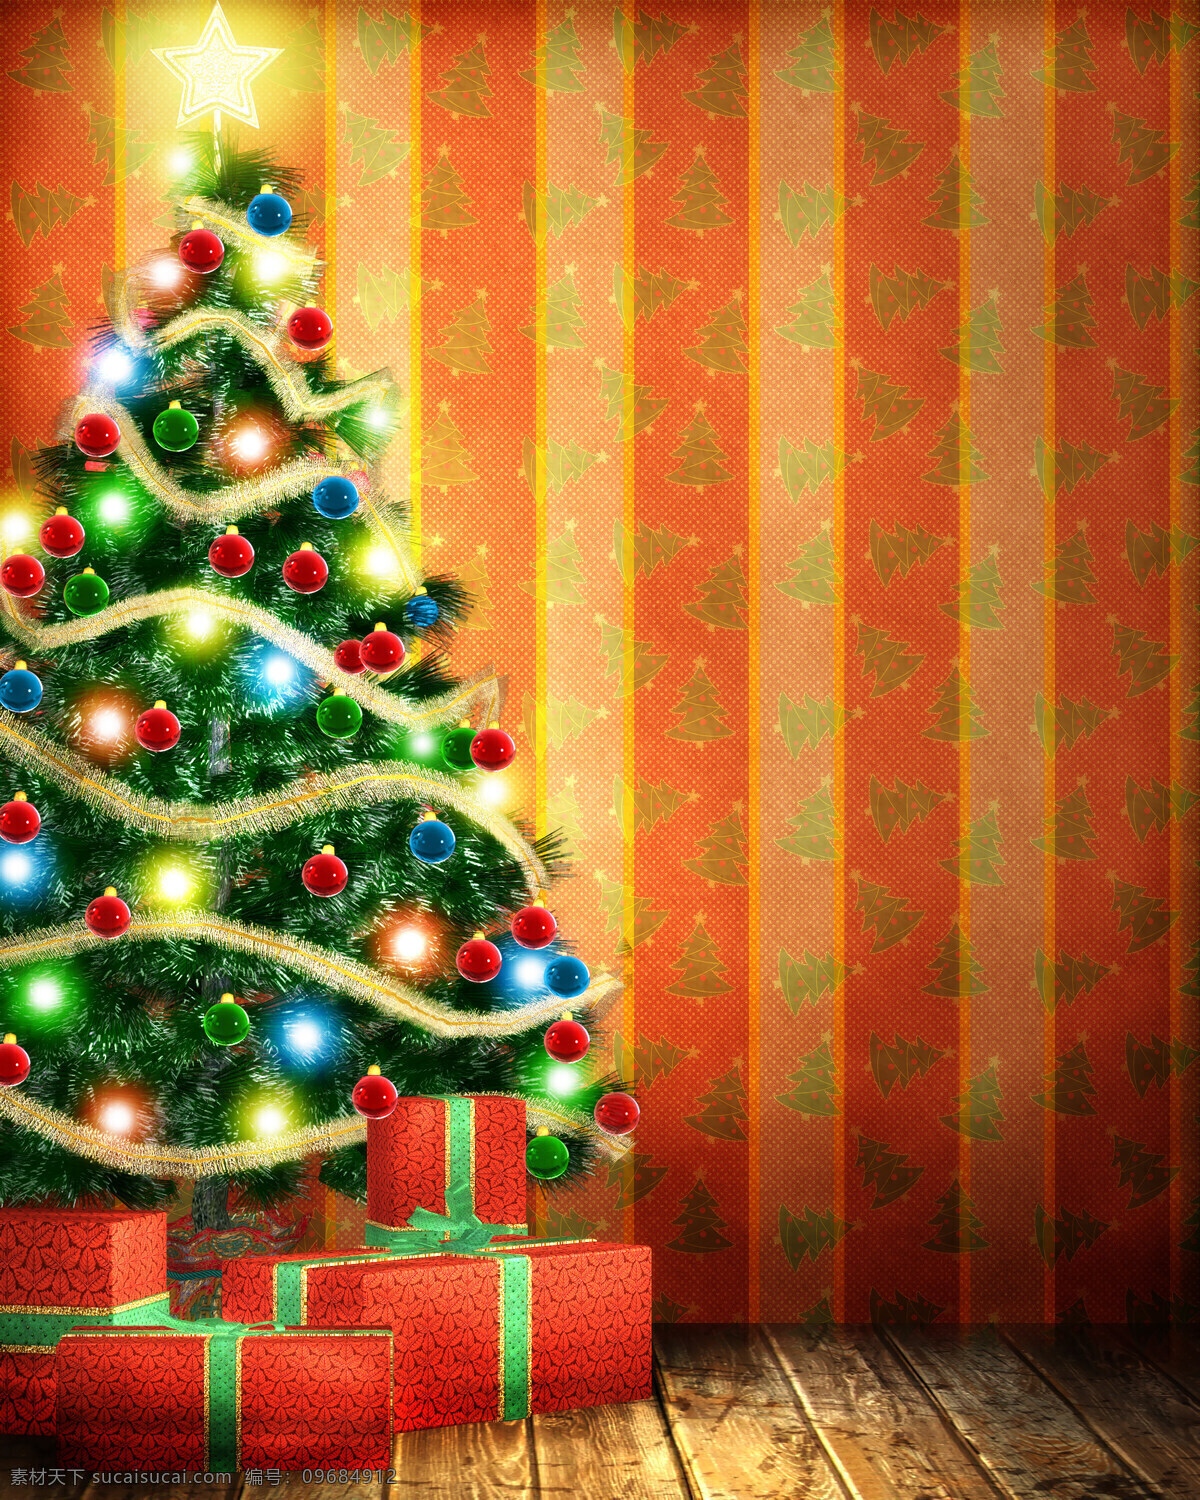 甜蜜 圣诞节 节日 圣诞节快乐 雪花 梦幻 唯美 甜蜜圣诞节 喜庆 温暖 圣诞树 圣诞礼物 霓虹灯 圣诞节图片 生活百科